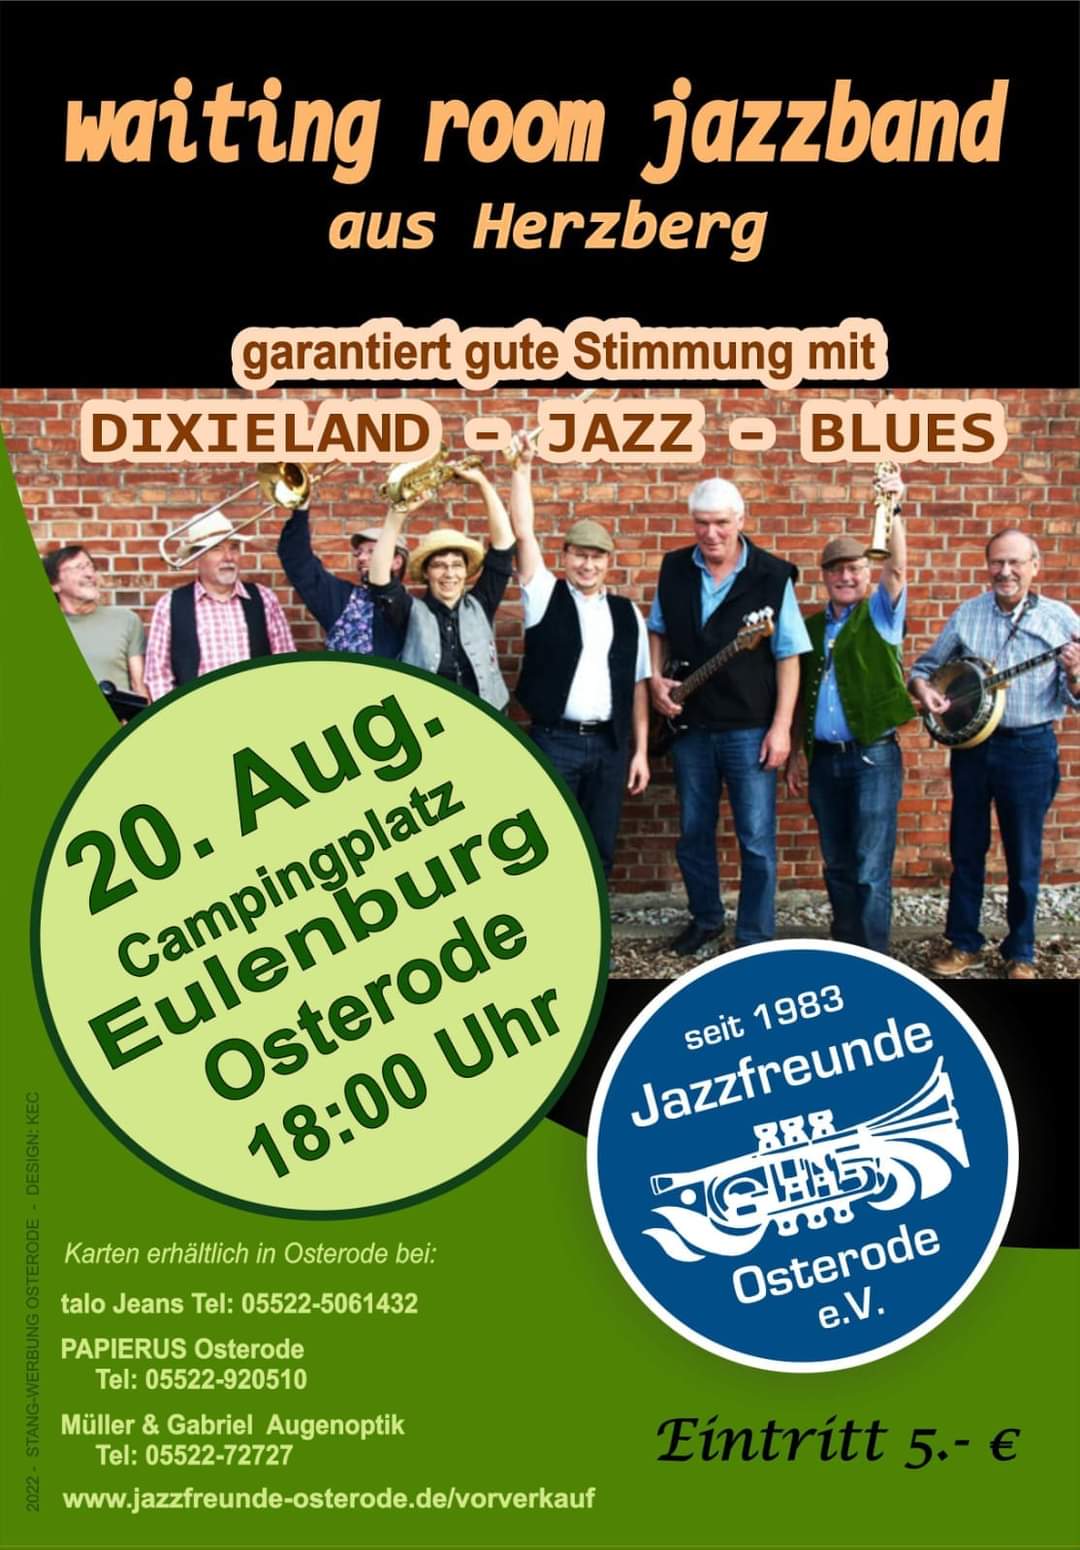 Waitng Room Jazzband aus Herzberg auf der Eulenburg